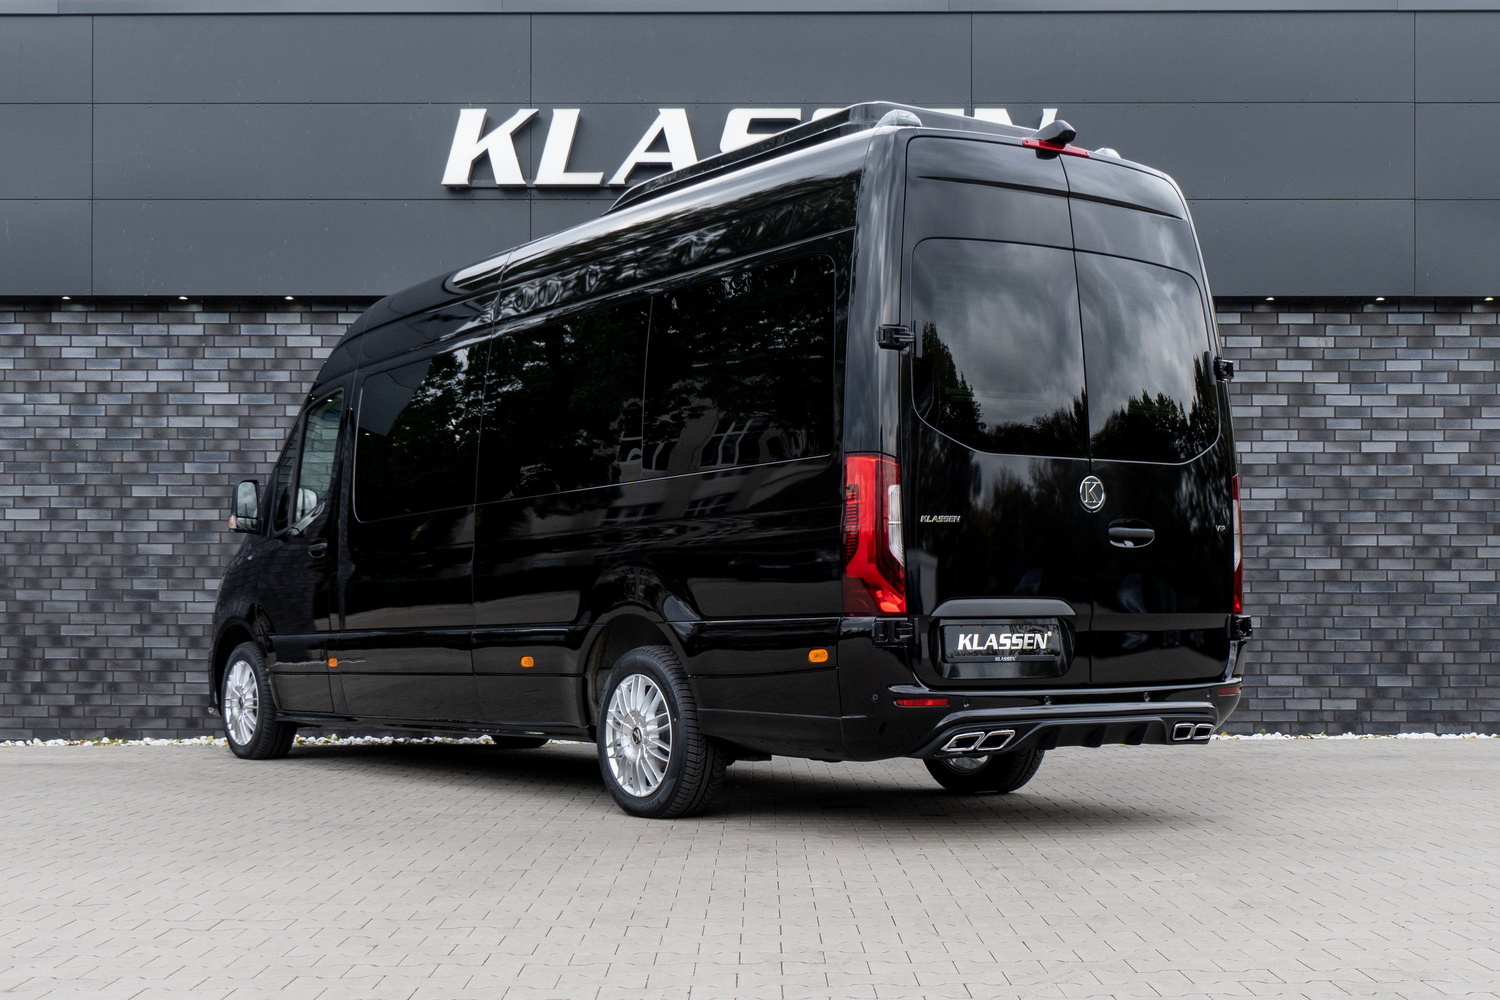 Exclusive Mercedes Sprinter VIP Van manufactured by KLASSEN